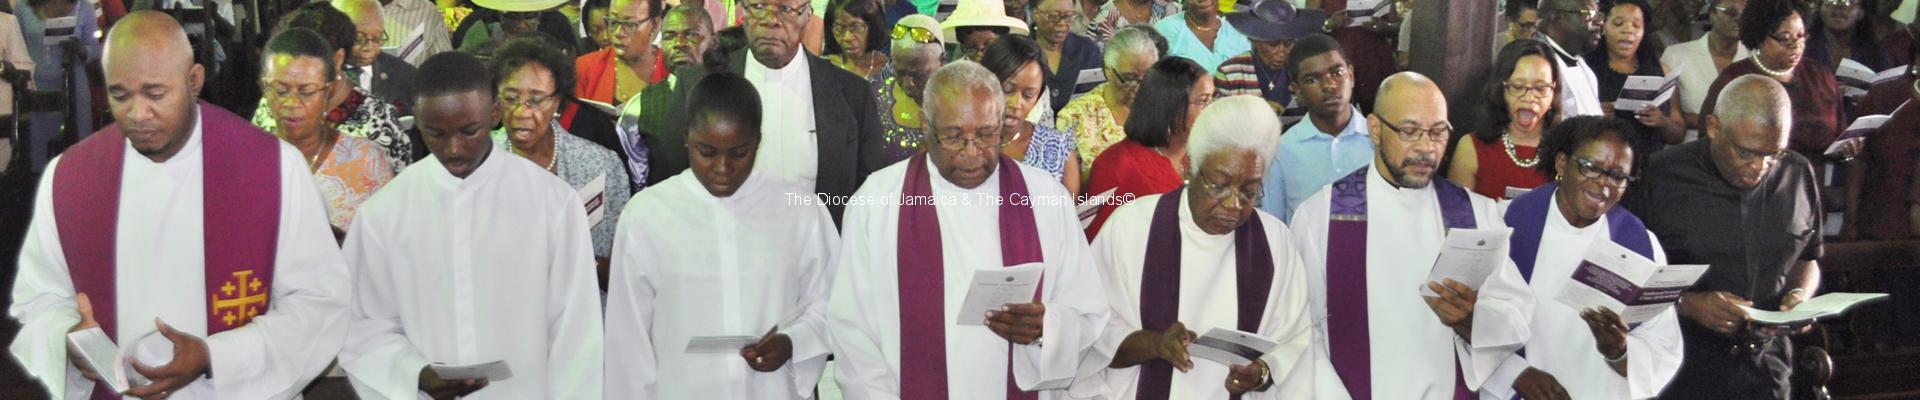 Bishop deSouza Laid to Rest